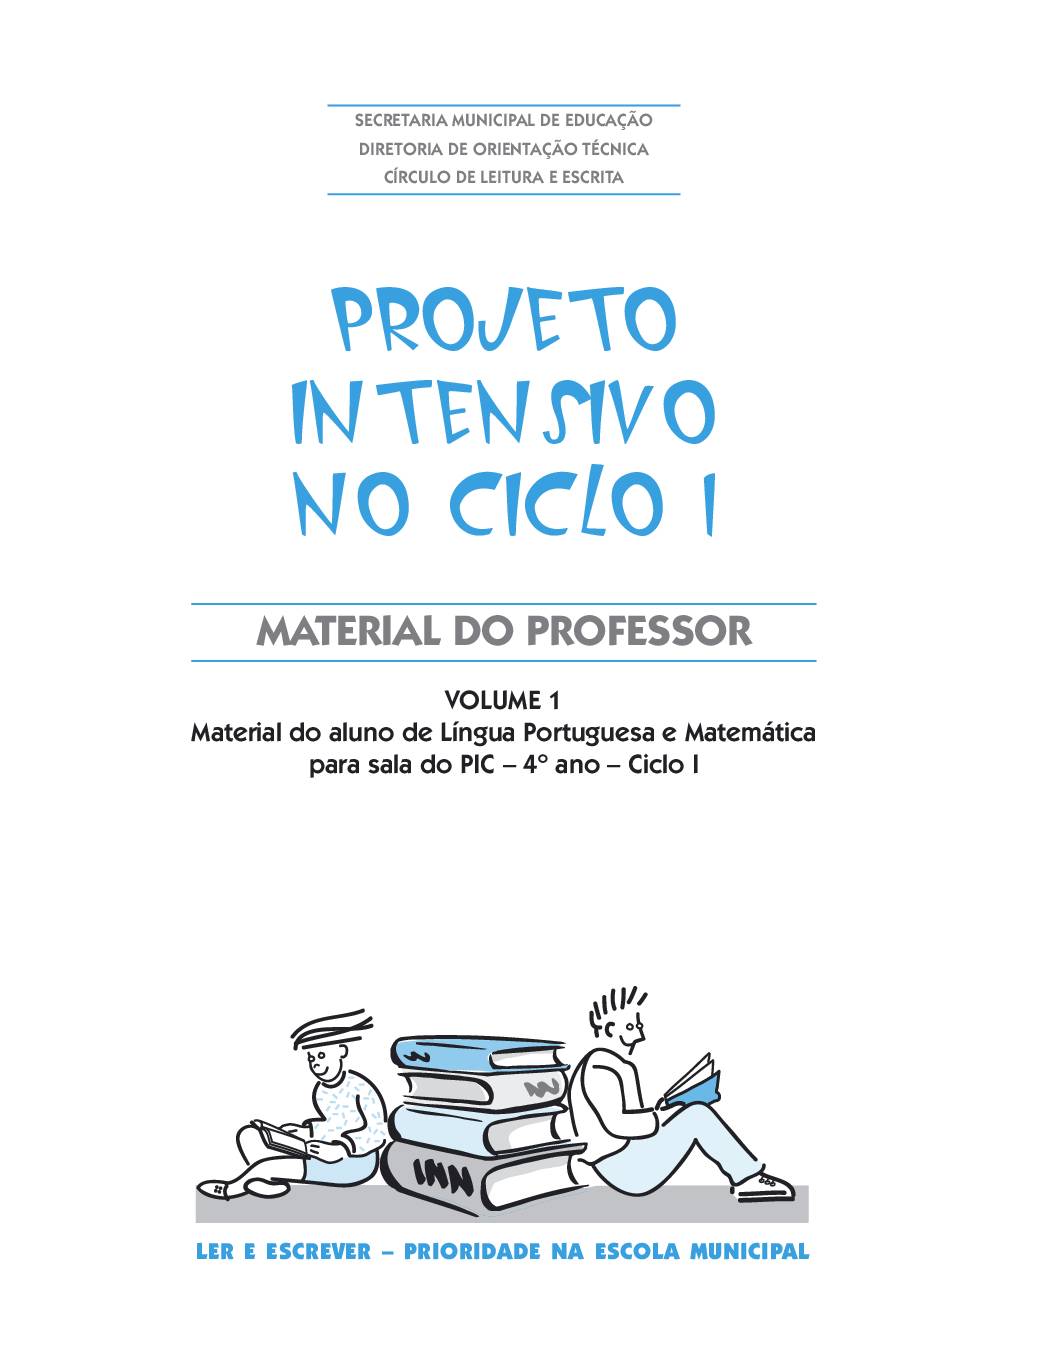 Material com orientações para os professores da sala do Projeto Intensivo do Ciclo I: Língua Portuguesa e Matemática - 4 º ano. Volume 1.